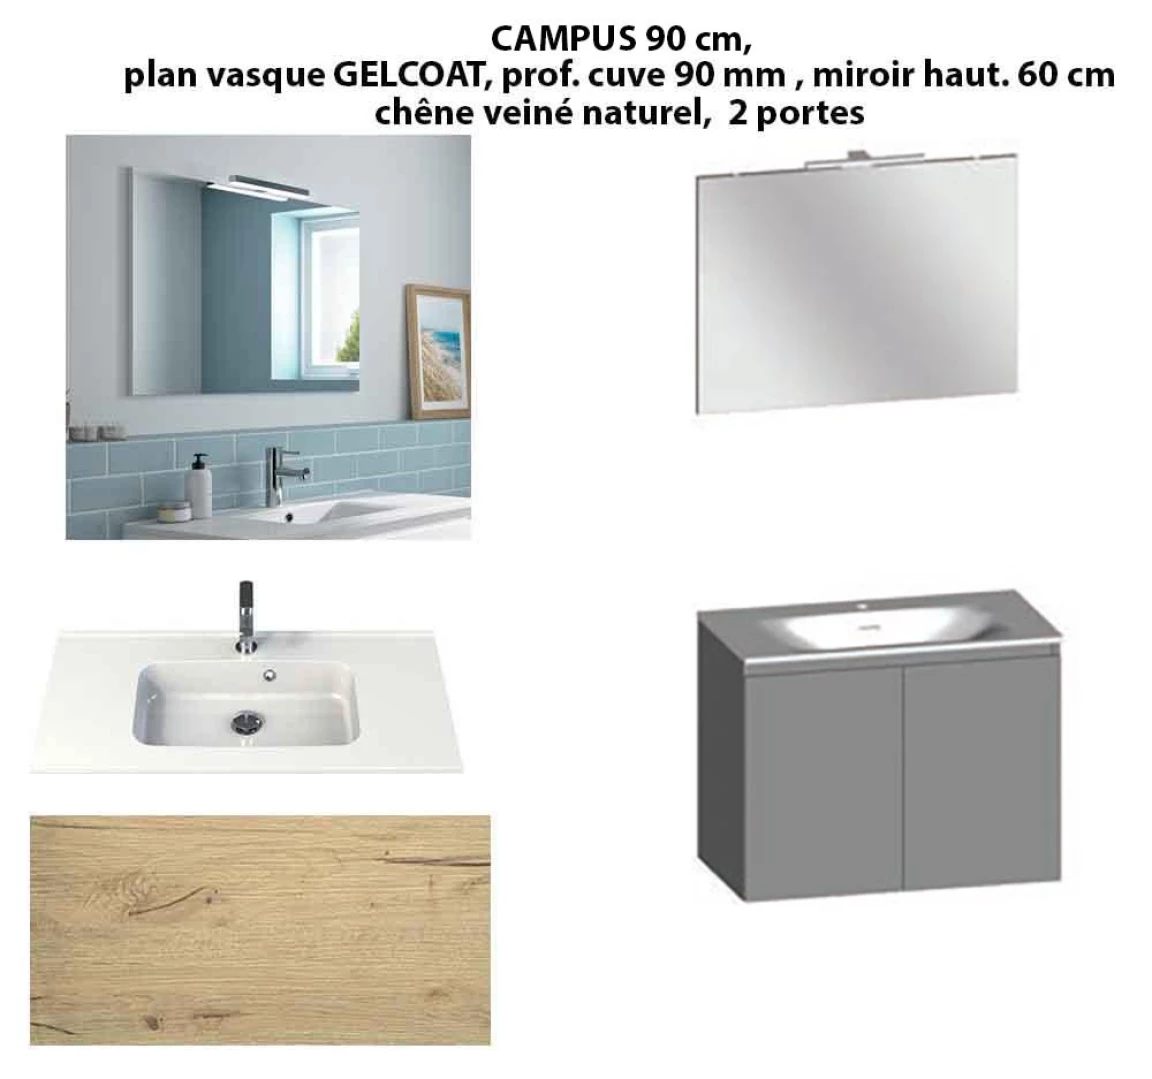 Ensemble meuble de salle de bain CAMPUS 90 cm, plan vasque GELCOAT, prof. cuve 90 mm, miroir hauteur 60 cm, chêne veiné naturel, 2 portes